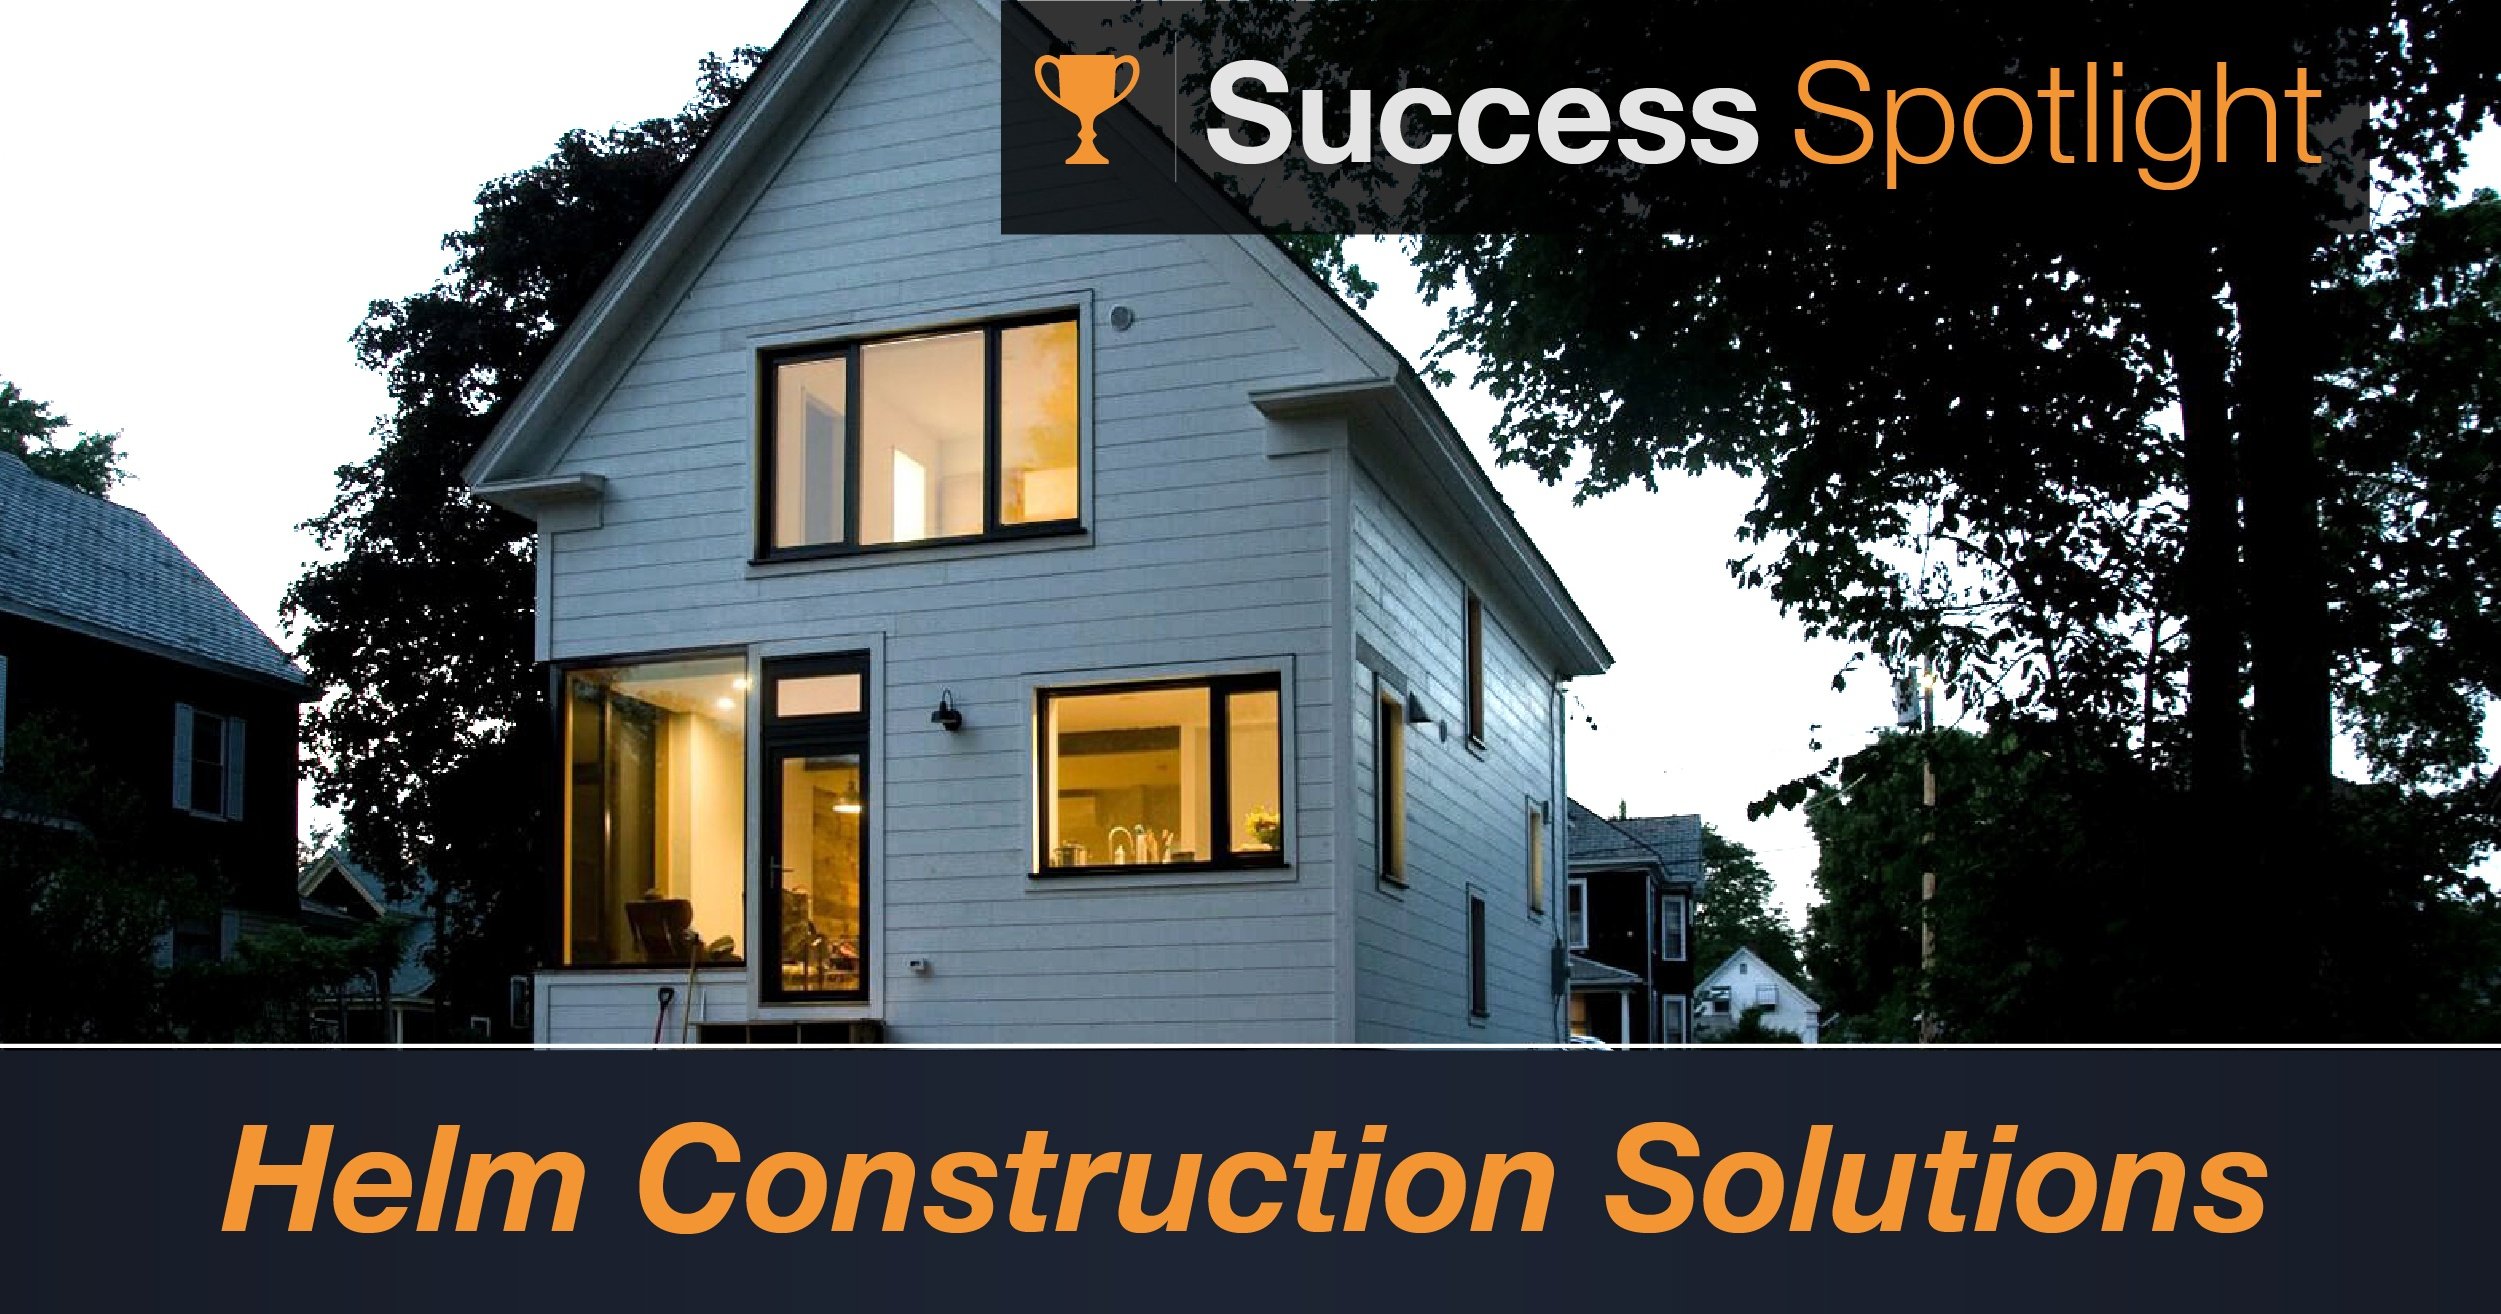 Success Spotlight: Helm Construction Solutions